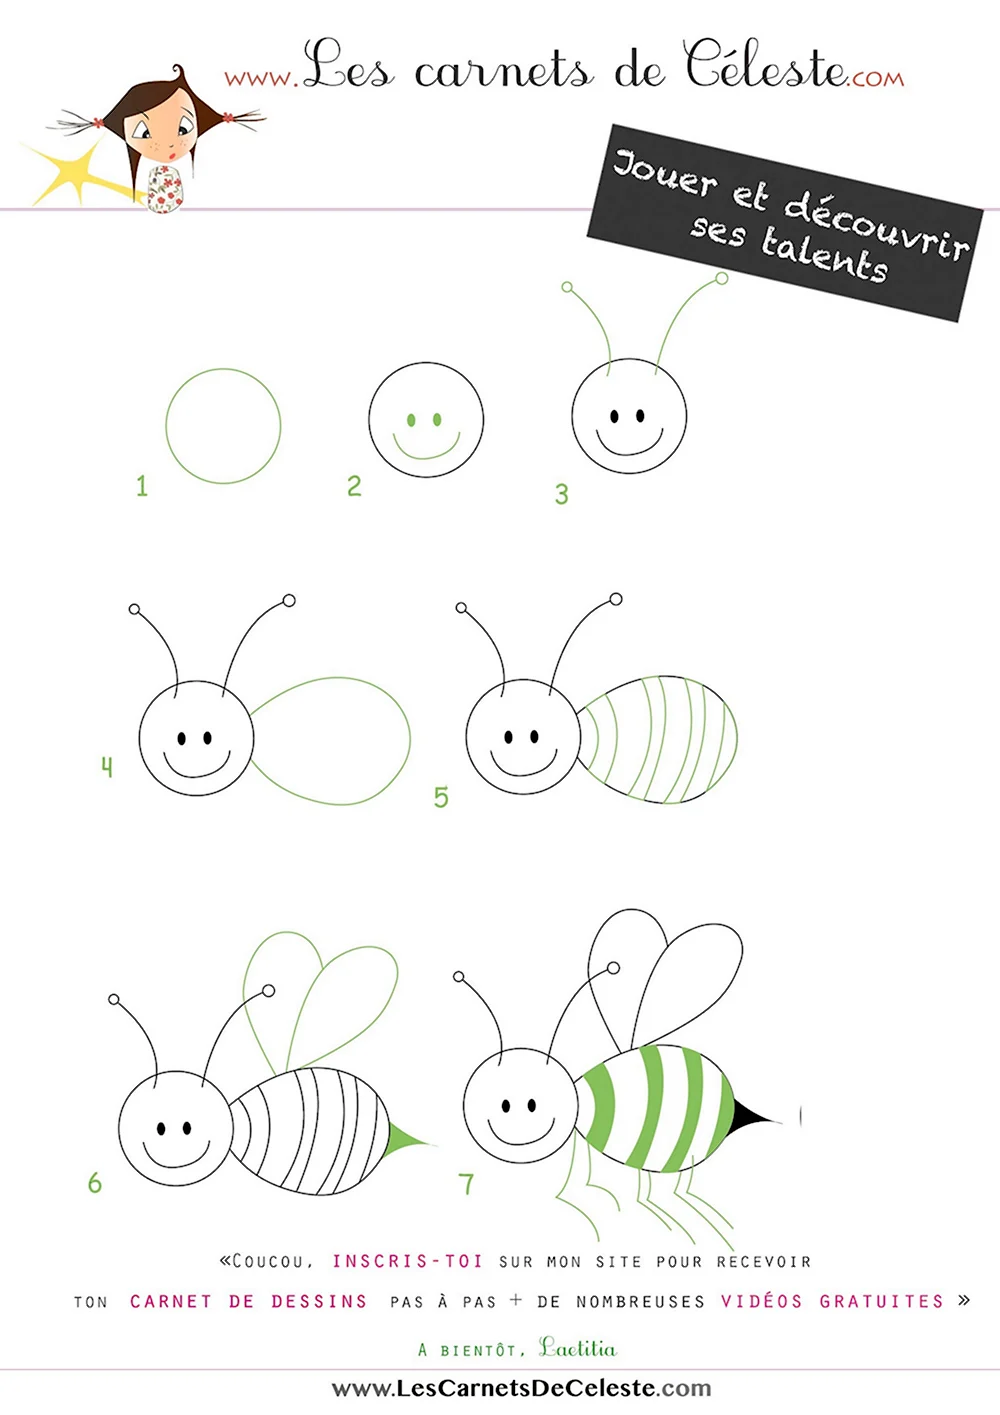 Как нарисовать пчелу трудно